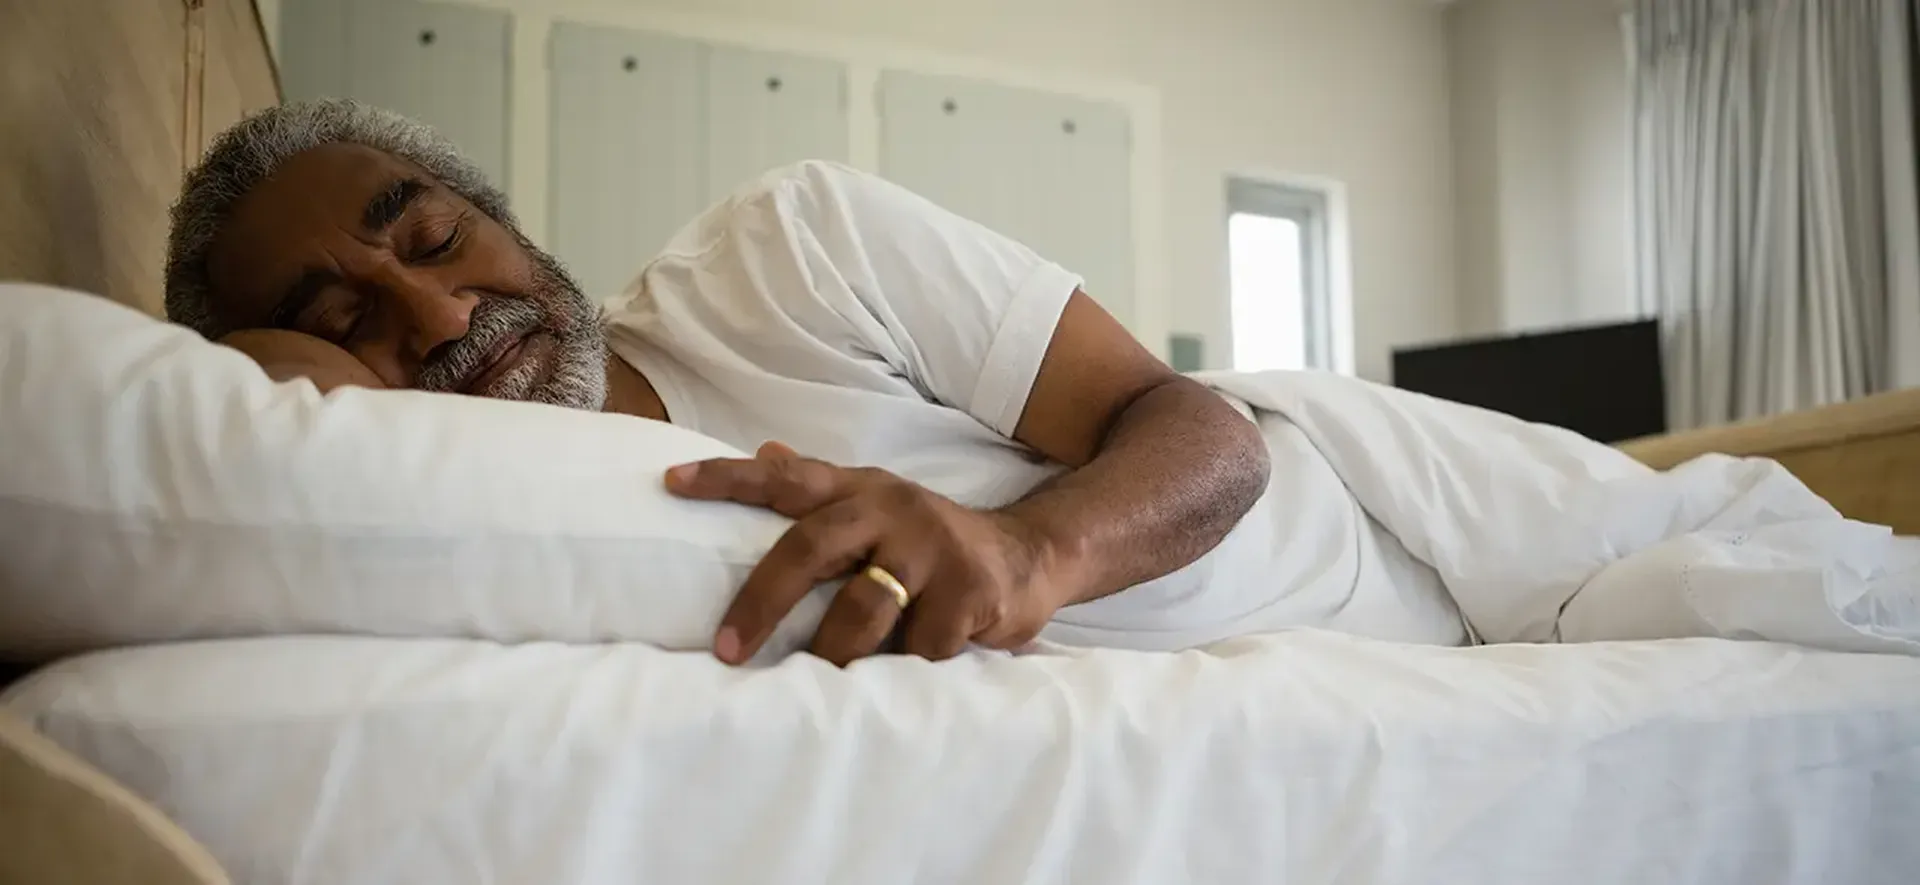 Qualidade do sono e hábitos de higiene têm grande influência na saúde da população idosa